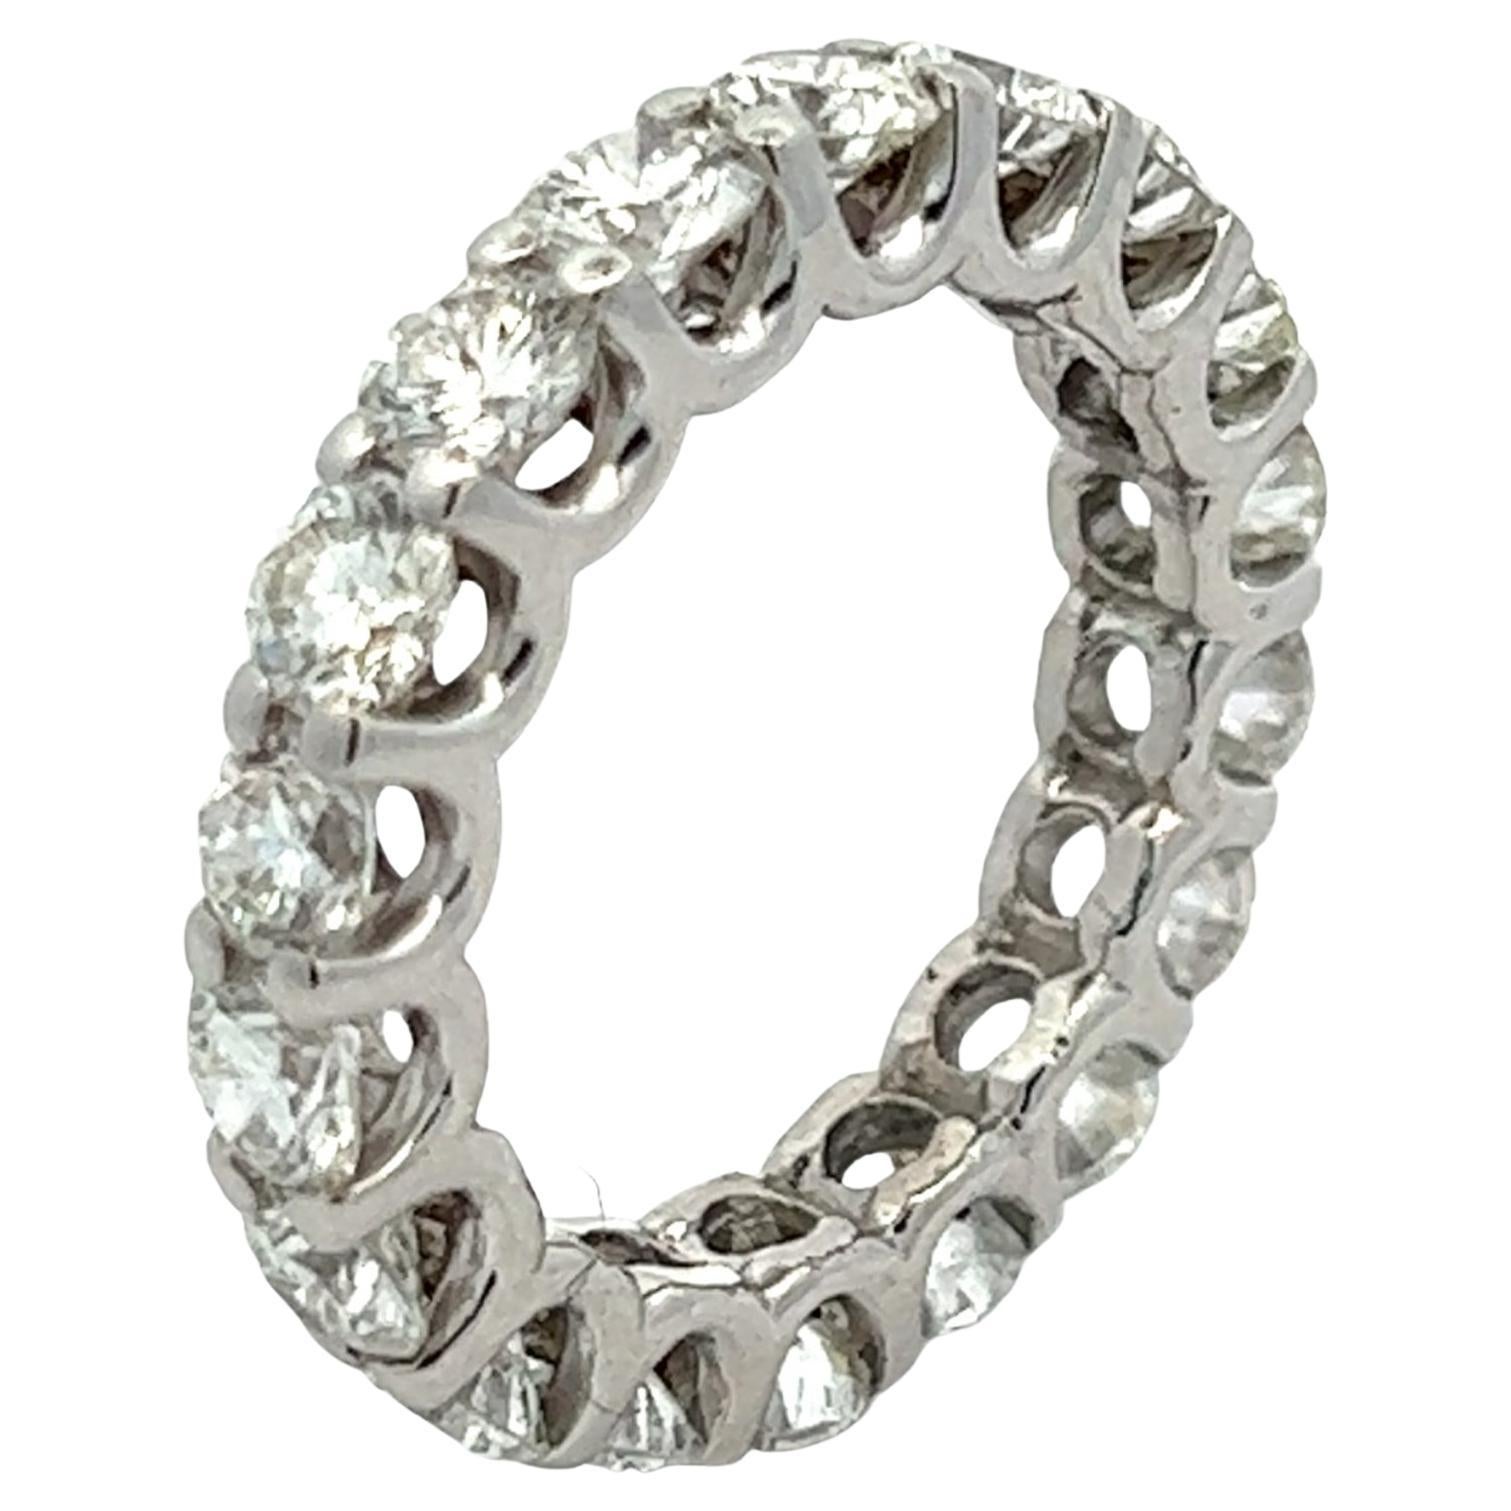 Wunderschöner diamantener Ehering für die Ewigkeit, handgefertigt aus 18 Karat Weißgold. Das Band enthält 18 runde Diamanten im Brillantschliff mit einem Gesamtgewicht von ca. 2,70 Karat, Farbe F-G und Reinheit VS2-SI1. Der Ring hat die Größe 3,75. 